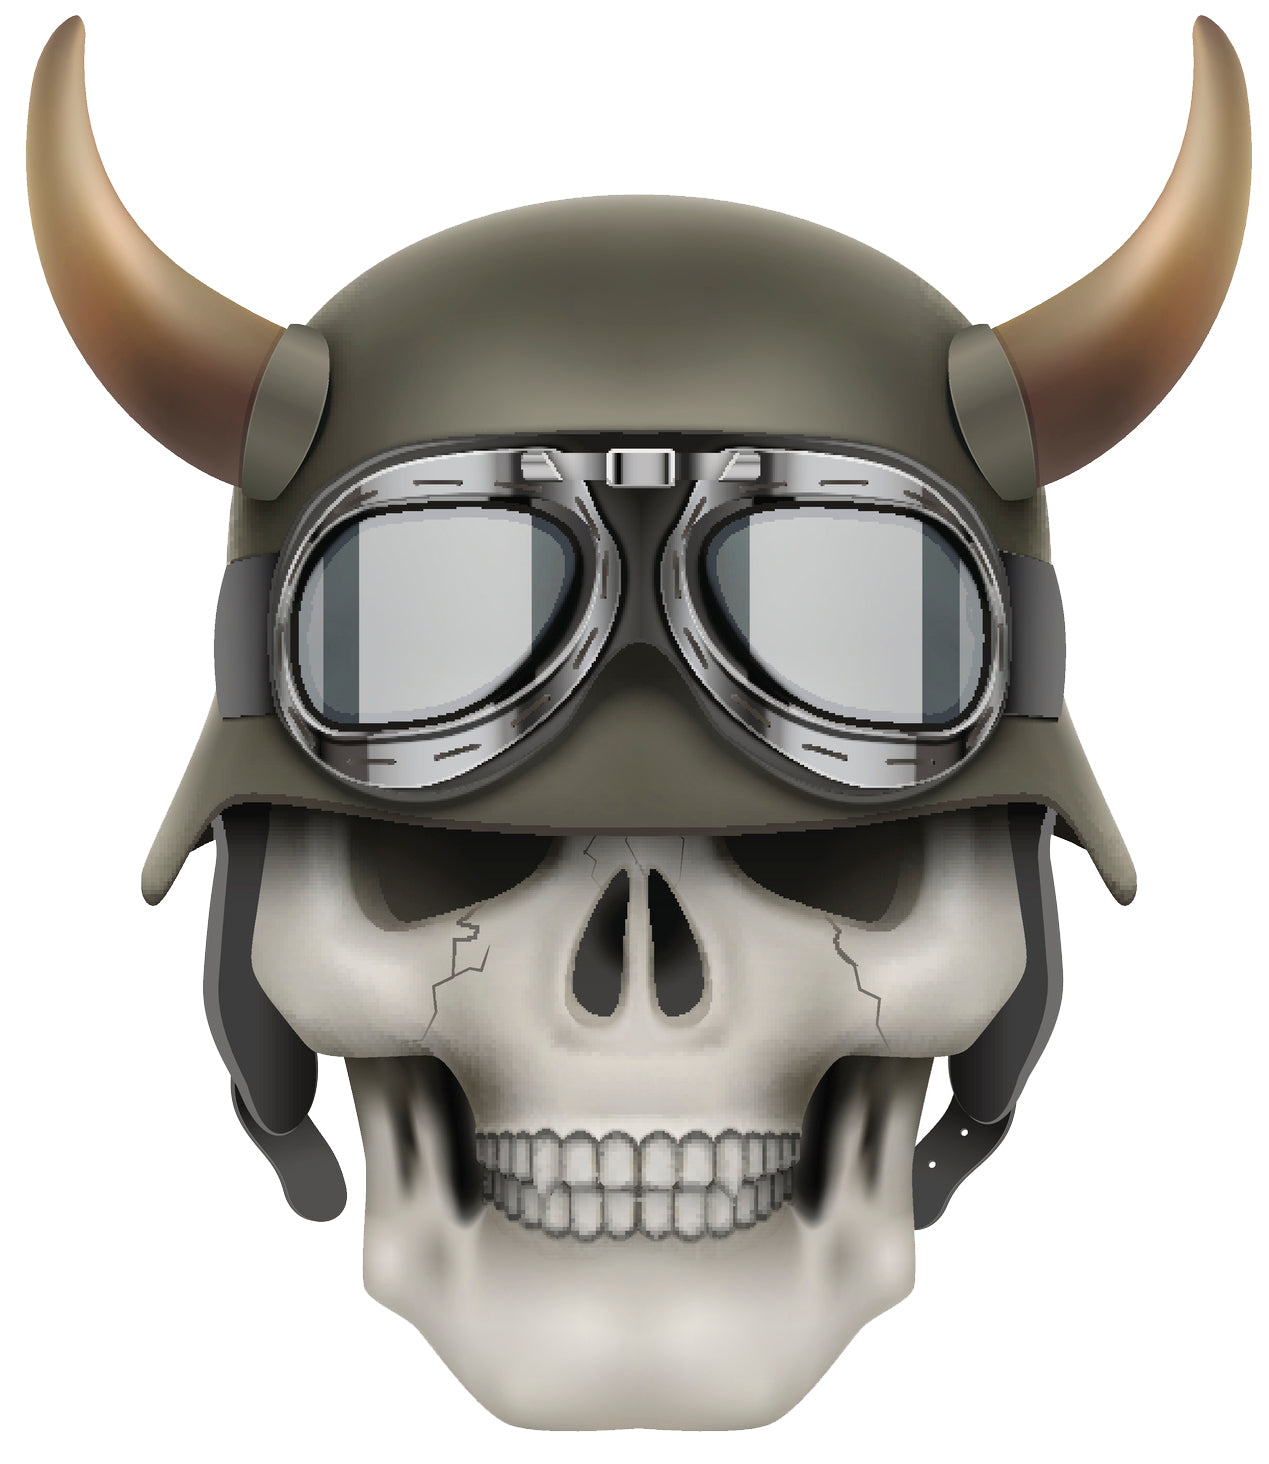 Cracked White Bone Skull with Horned Military Helmet Vinyl Decal Sticker